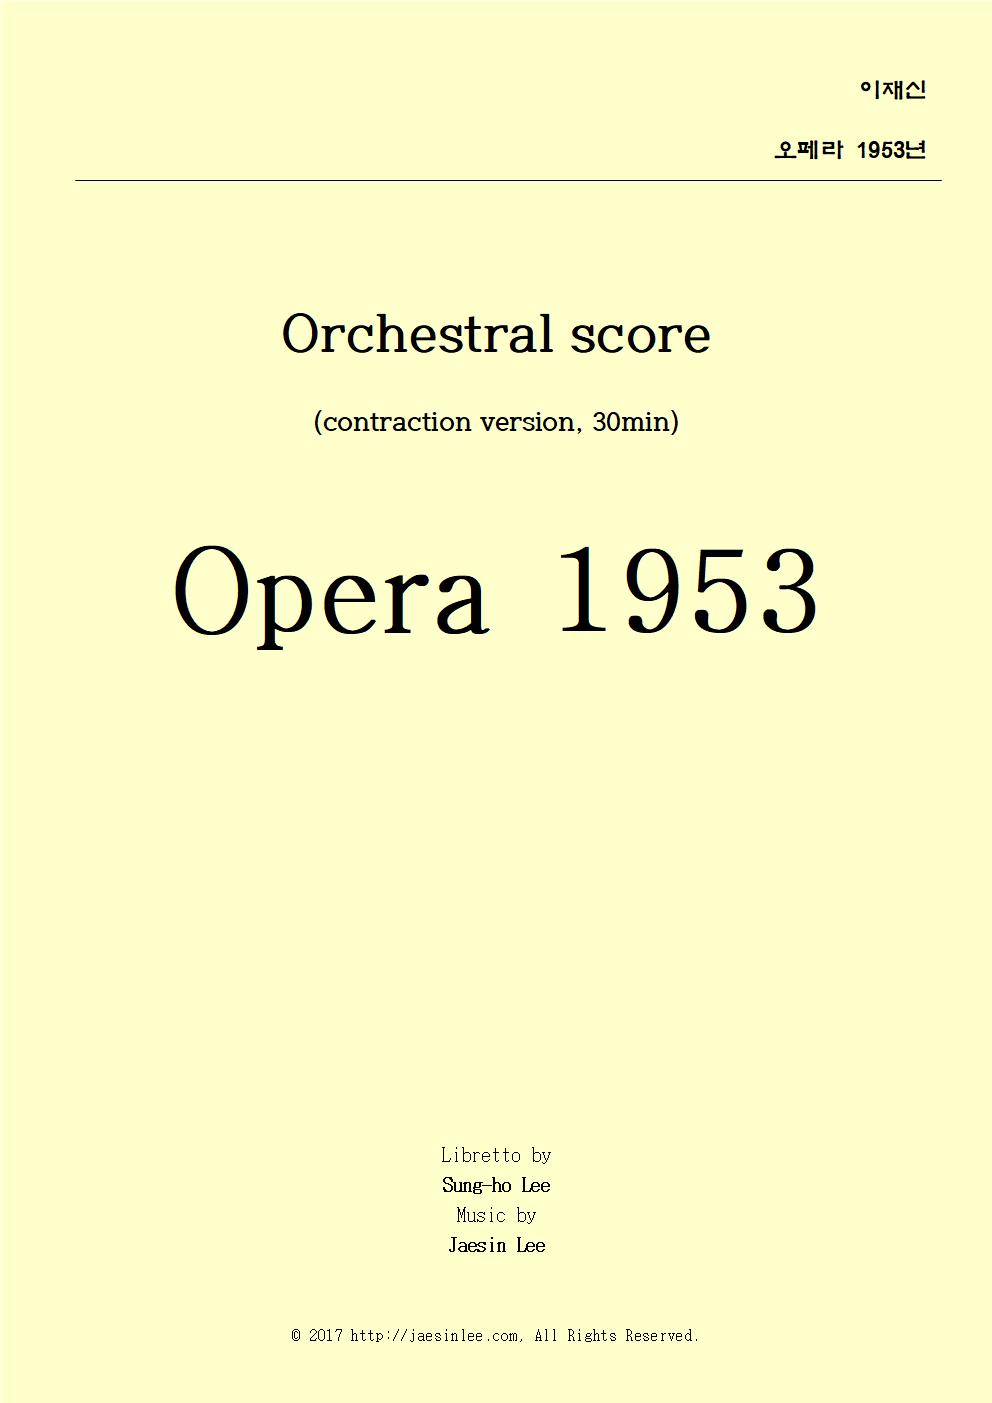 배경색 노랑 - 오페라 1953년 오케스트라001.jpg